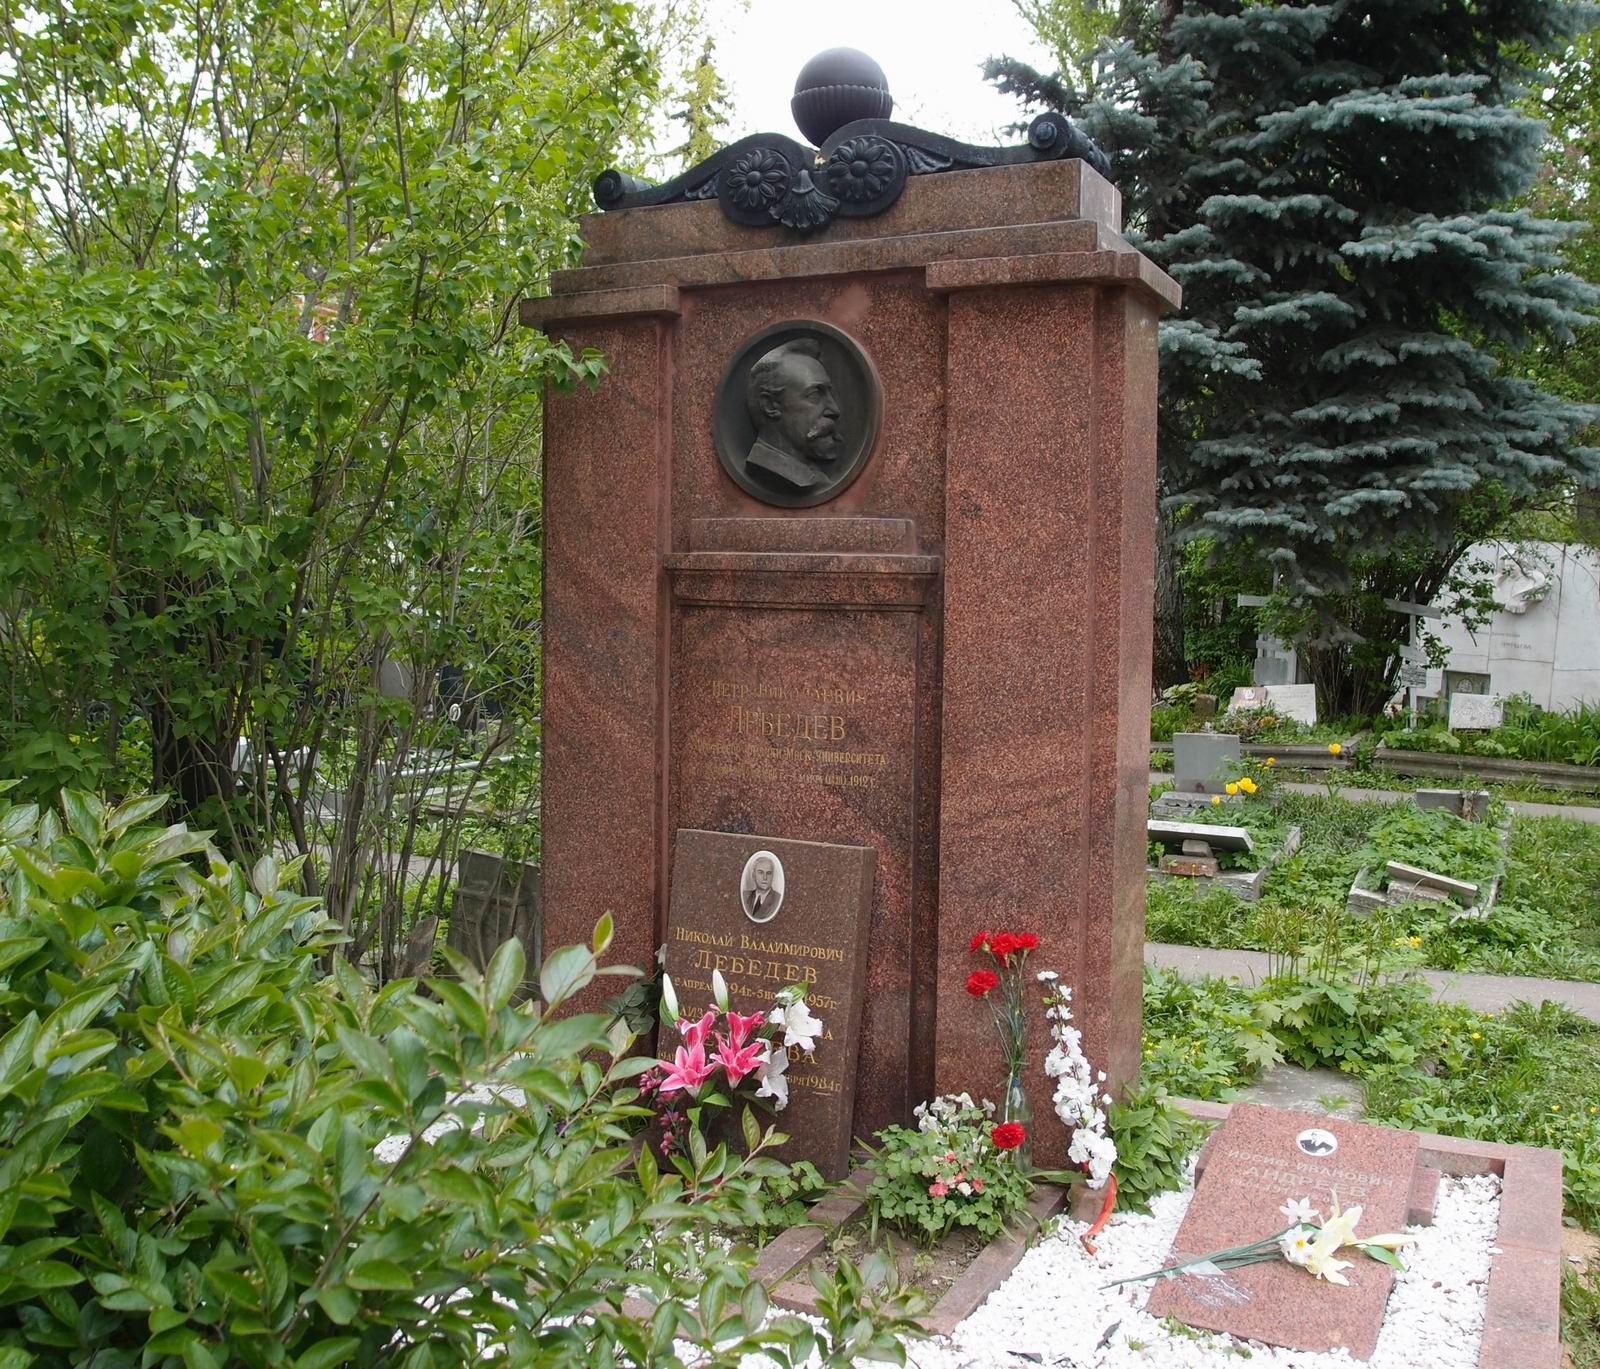 Памятник на могиле Лебедева П.Н. (1866–1912), ск. Н.Андреев, арх. А.Голубев, на Новодевичьем кладбище (3–20–1). Нажмите левую кнопку мыши чтобы увидеть фрагмент памятника крупно.